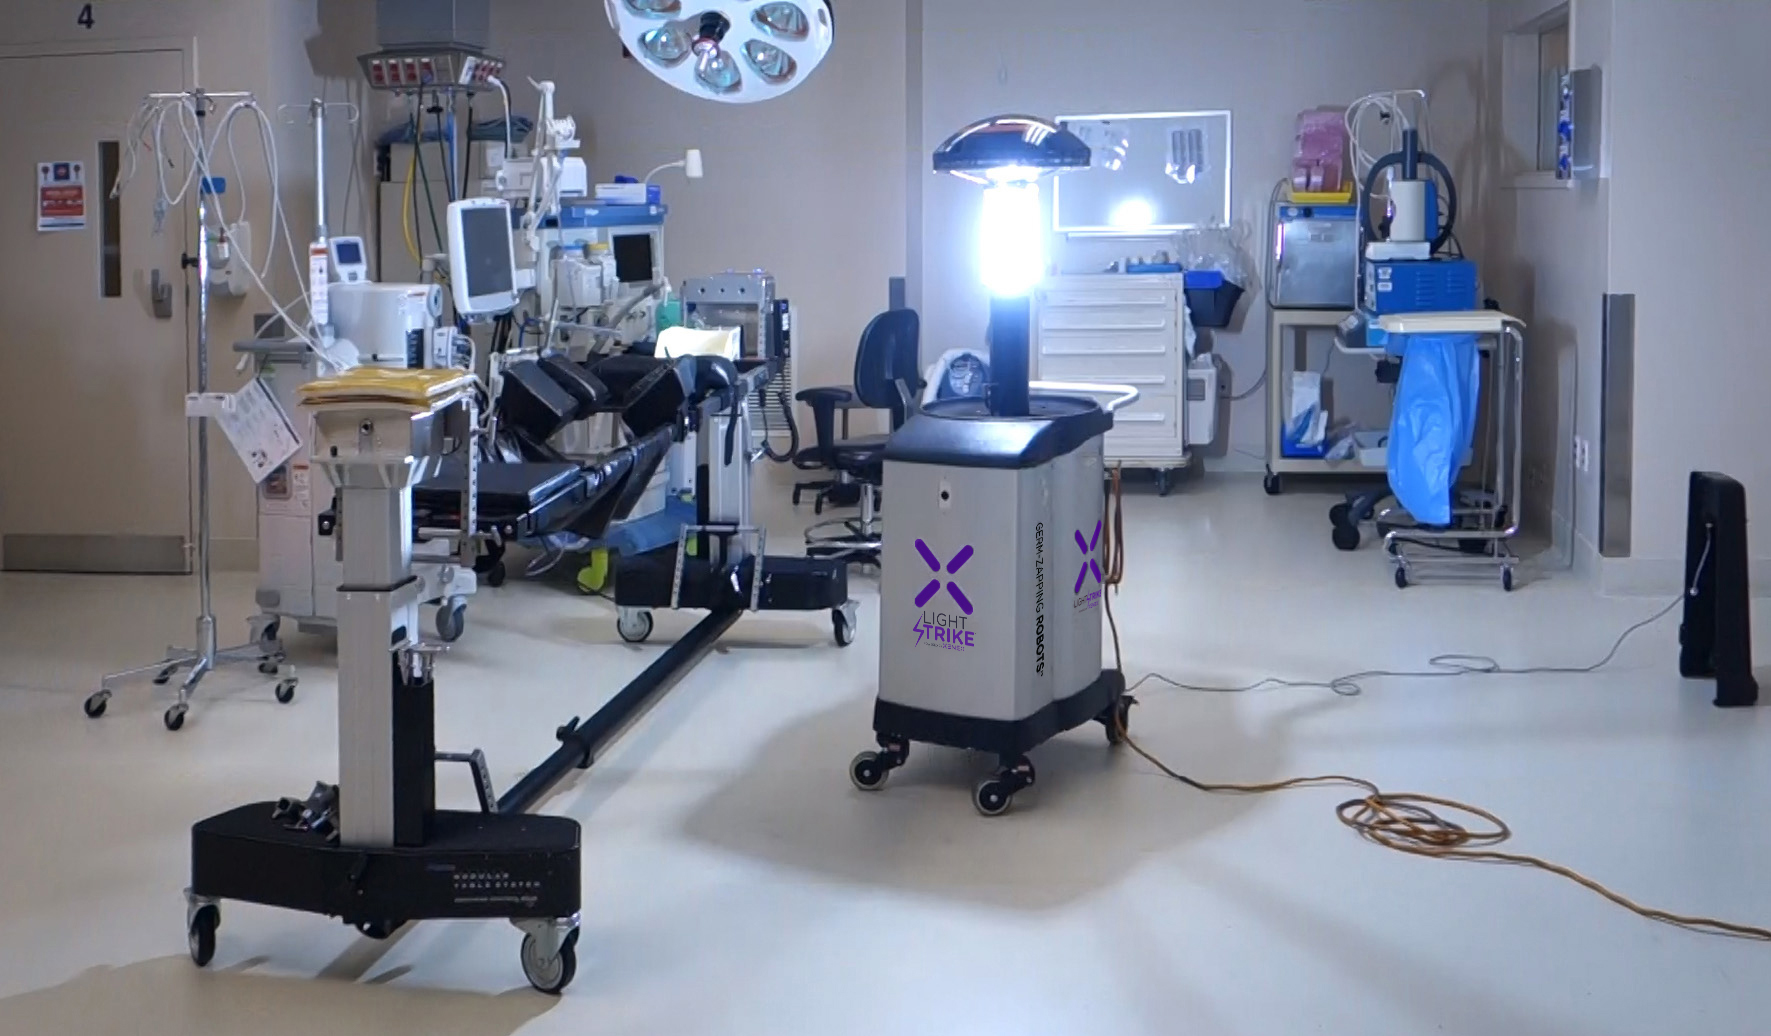 Gato de salto ayuda Oficial Hospital-Disinfecting Robots: Xenex Sees Surge In Orders As COVID-19  Pandemic Escalates